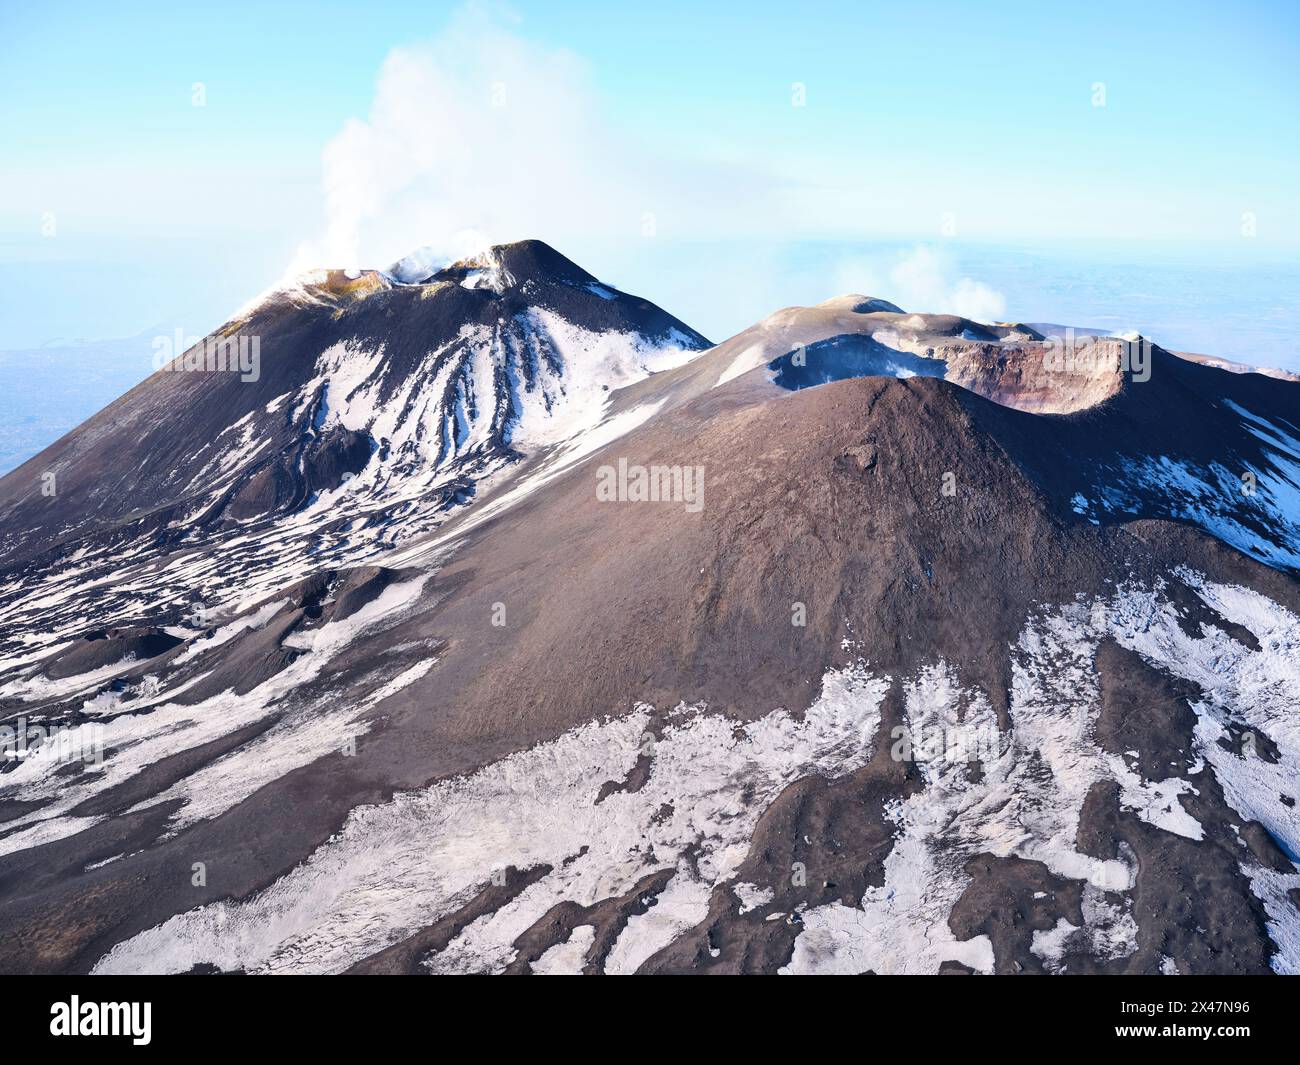 VUE AÉRIENNE. Le sommet de l’Etna avec ses cinq cratères actifs, vu du nord. Ville métropolitaine de Catane, Sicile, Italie. Banque D'Images